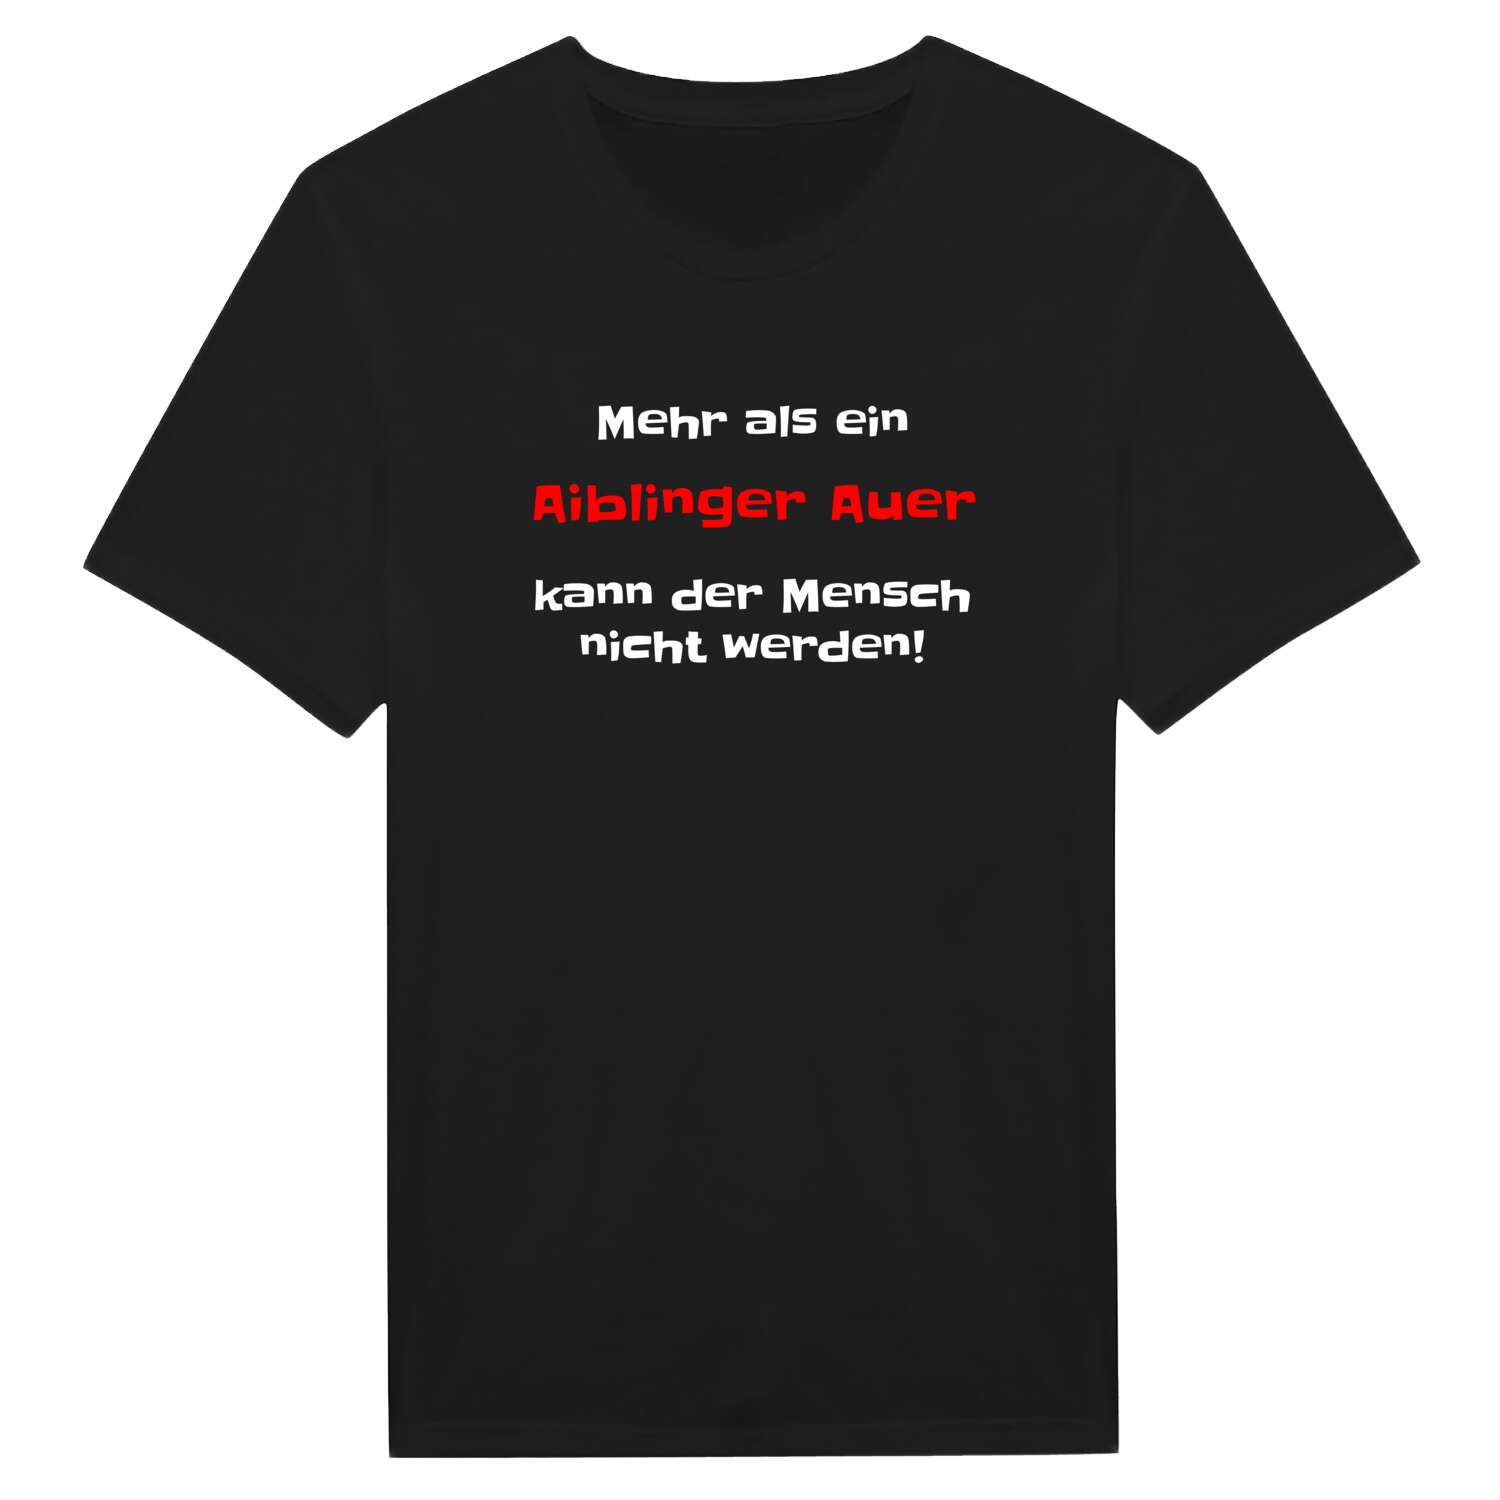 Aiblinger Au T-Shirt »Mehr als ein«